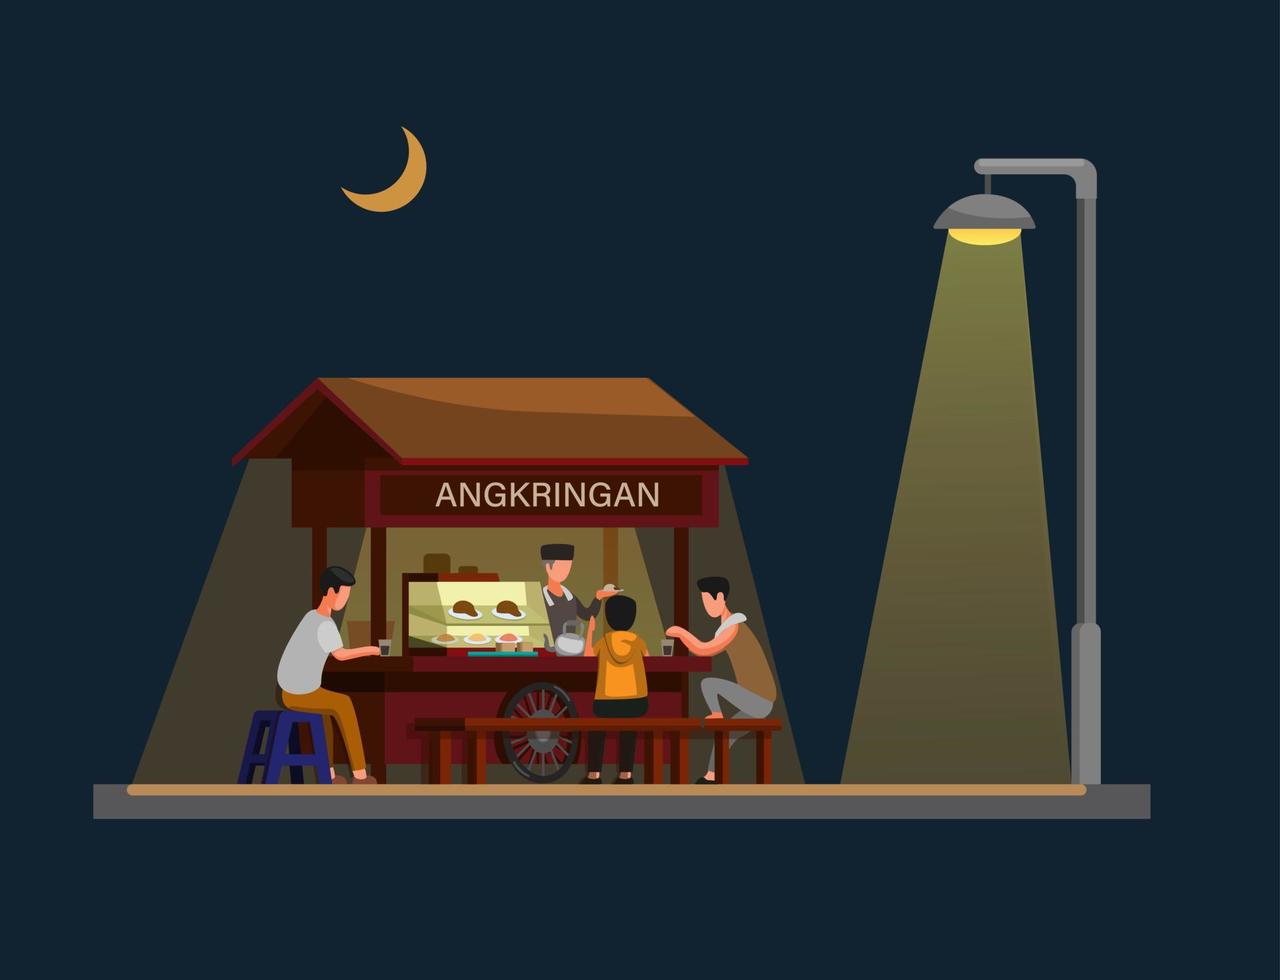 angkringan es comida callejera tradicional de jogjakarta indonesia en la noche. concepto en vector de ilustración de dibujos animados